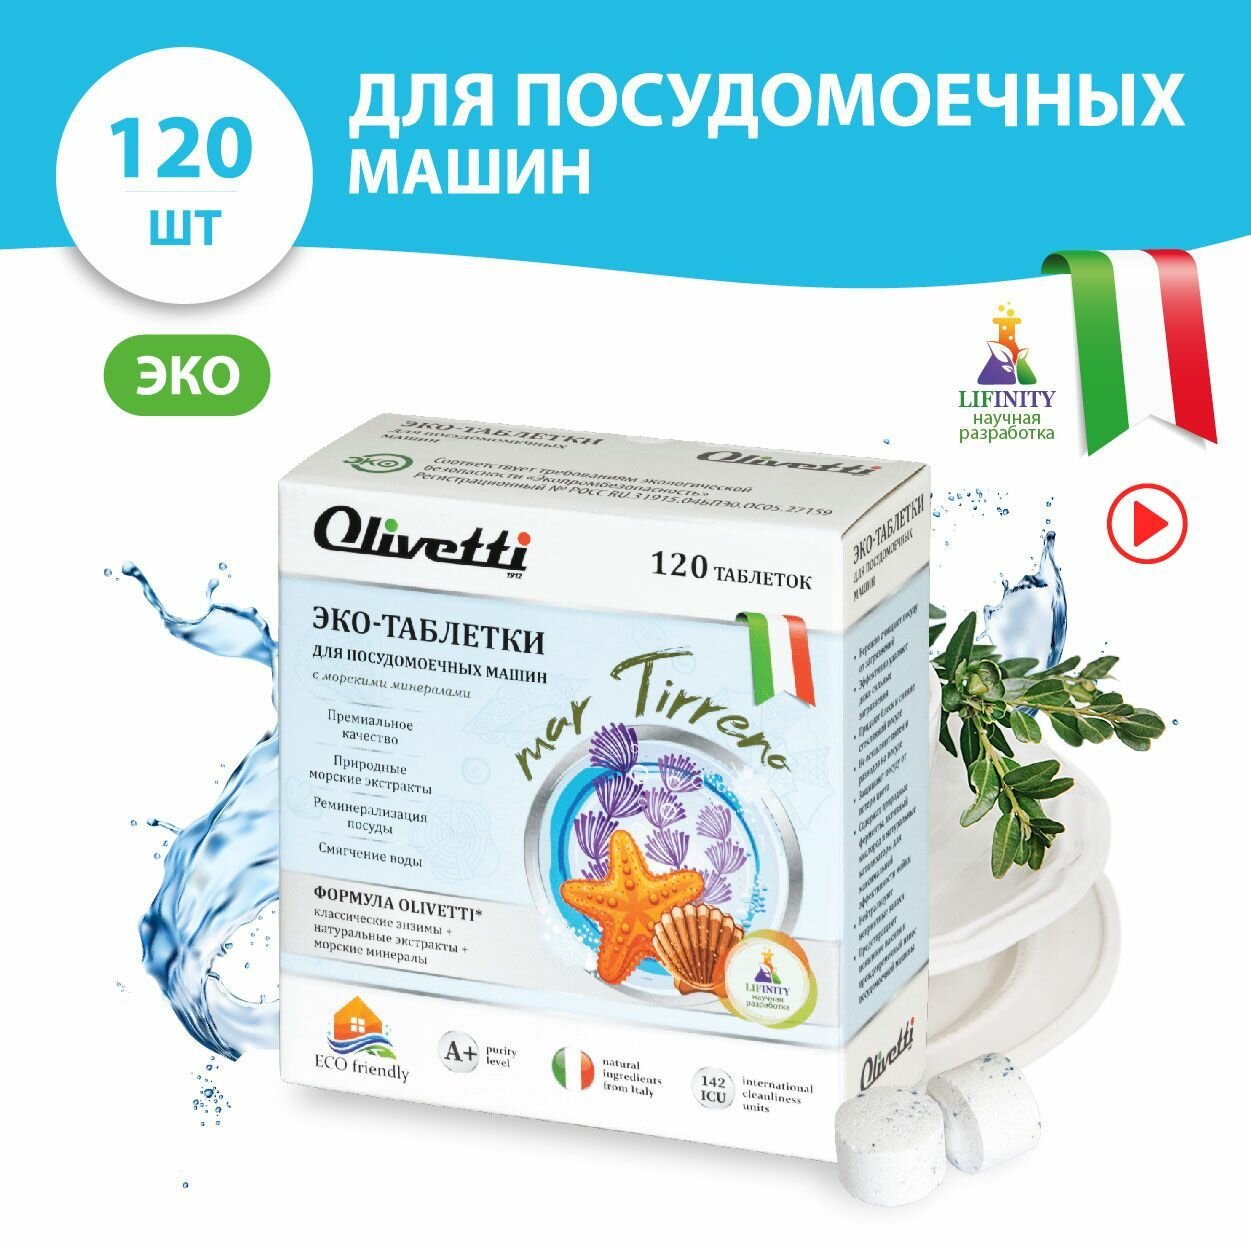 Эко-таблетки для посудомоечных машин Olivetti Морские минералы 120 шт без пятен и разводов защита цвета натуральные компоненты из Италии